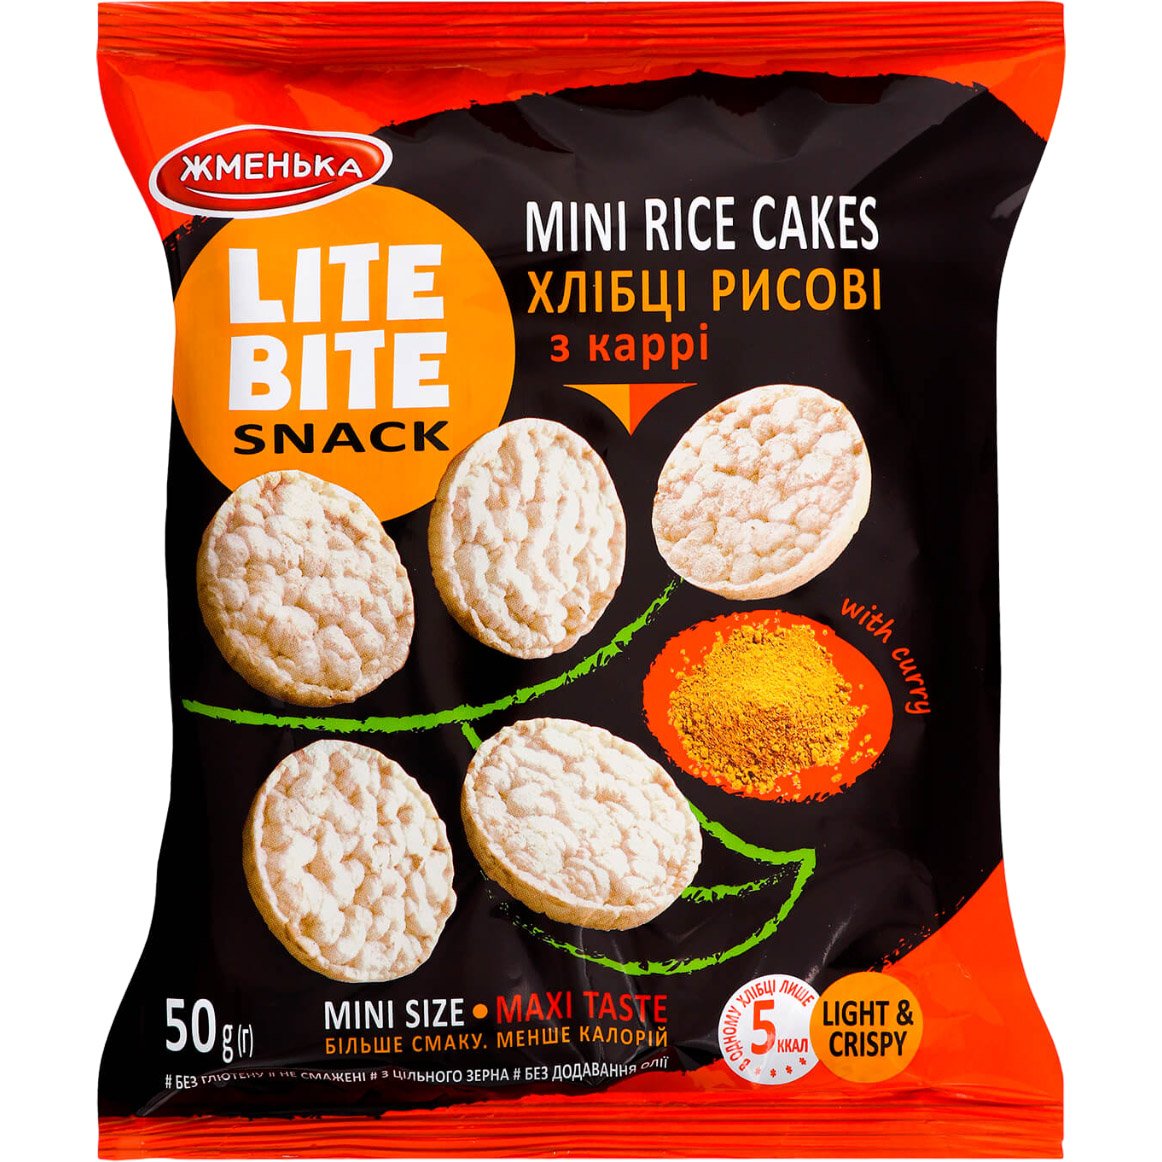 Хлібці рисові Жменька Lite Bite з каррі 50 г (908429) - фото 1